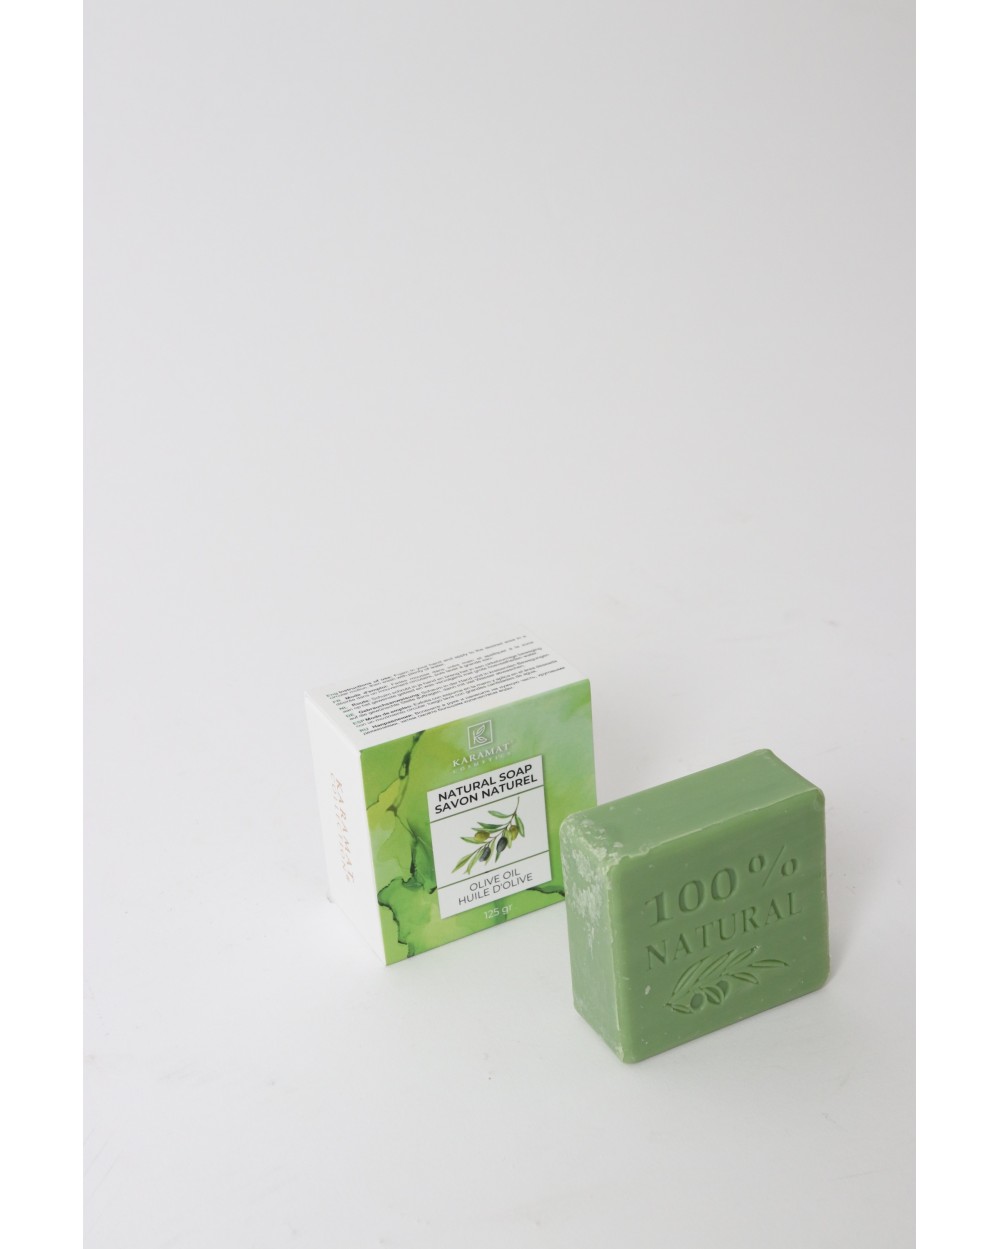 Karamat natural soap olive oil 125 g